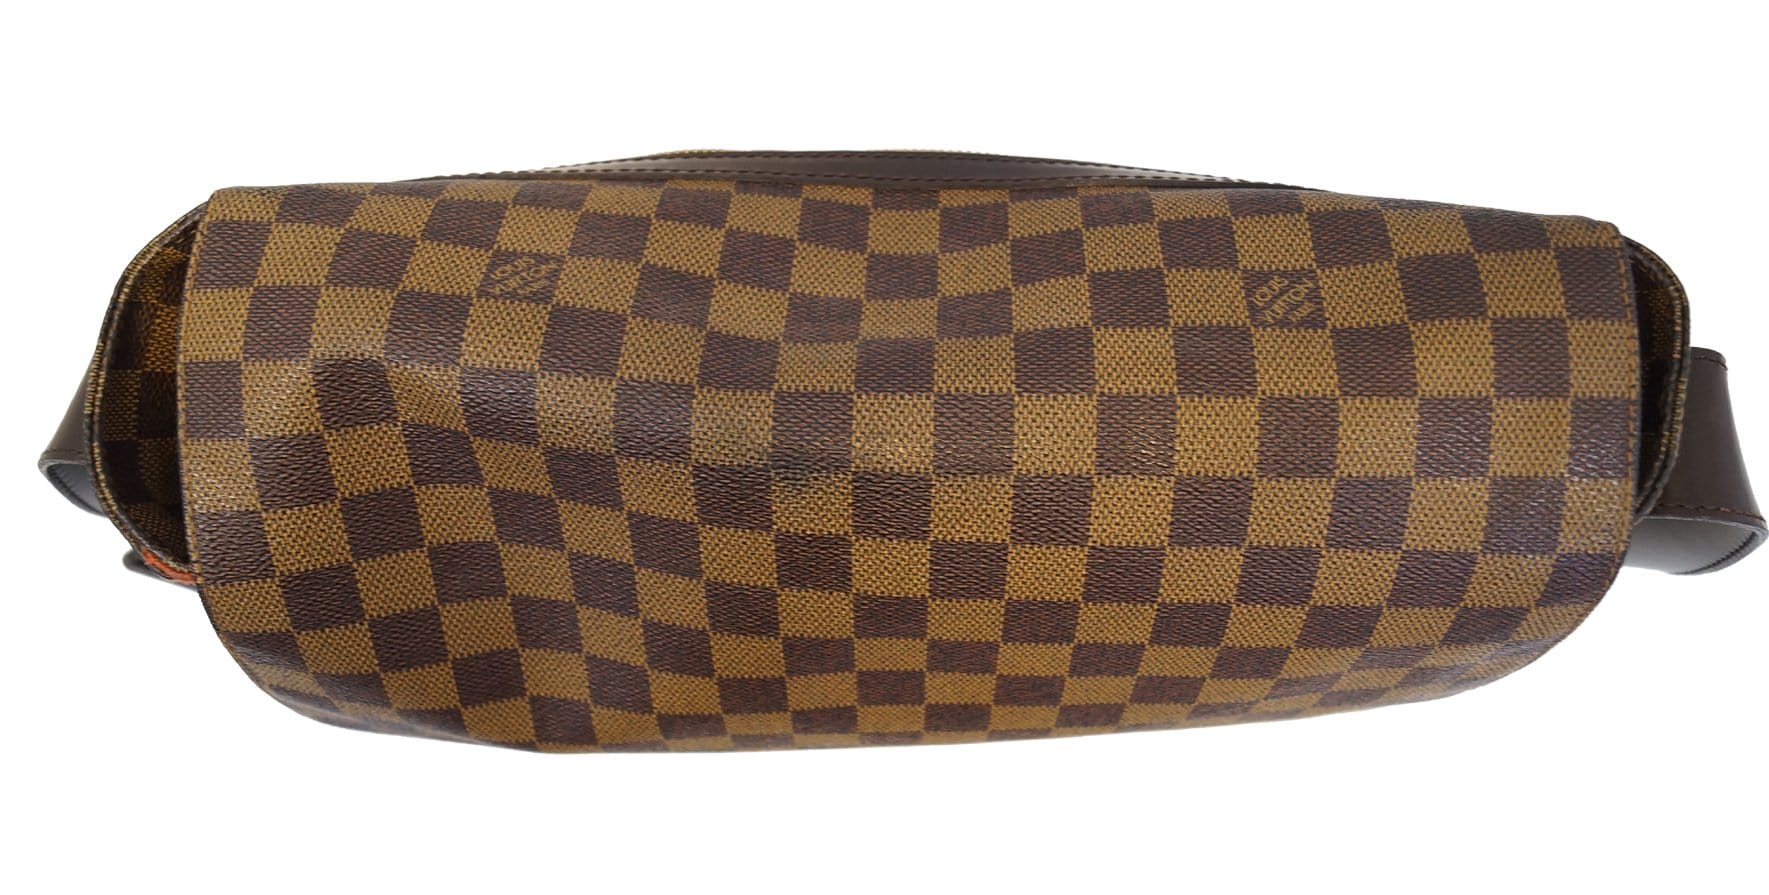 Louis-Vuitton-Damier-Ebene-Bastille-Shoulder-Bag-N45258 – dct